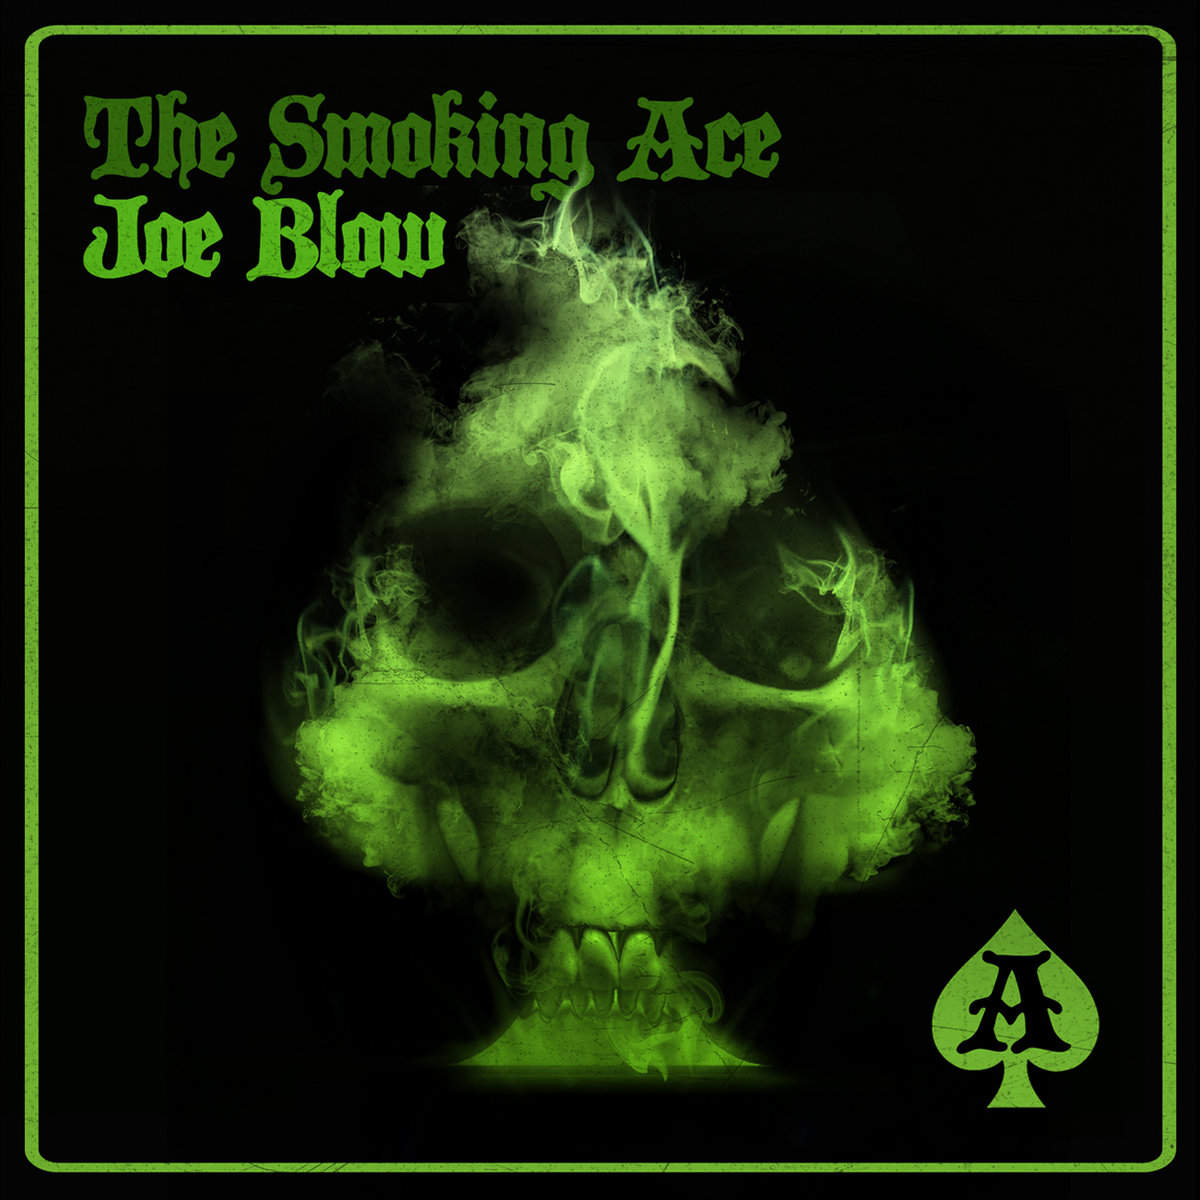 The Smoking Ace